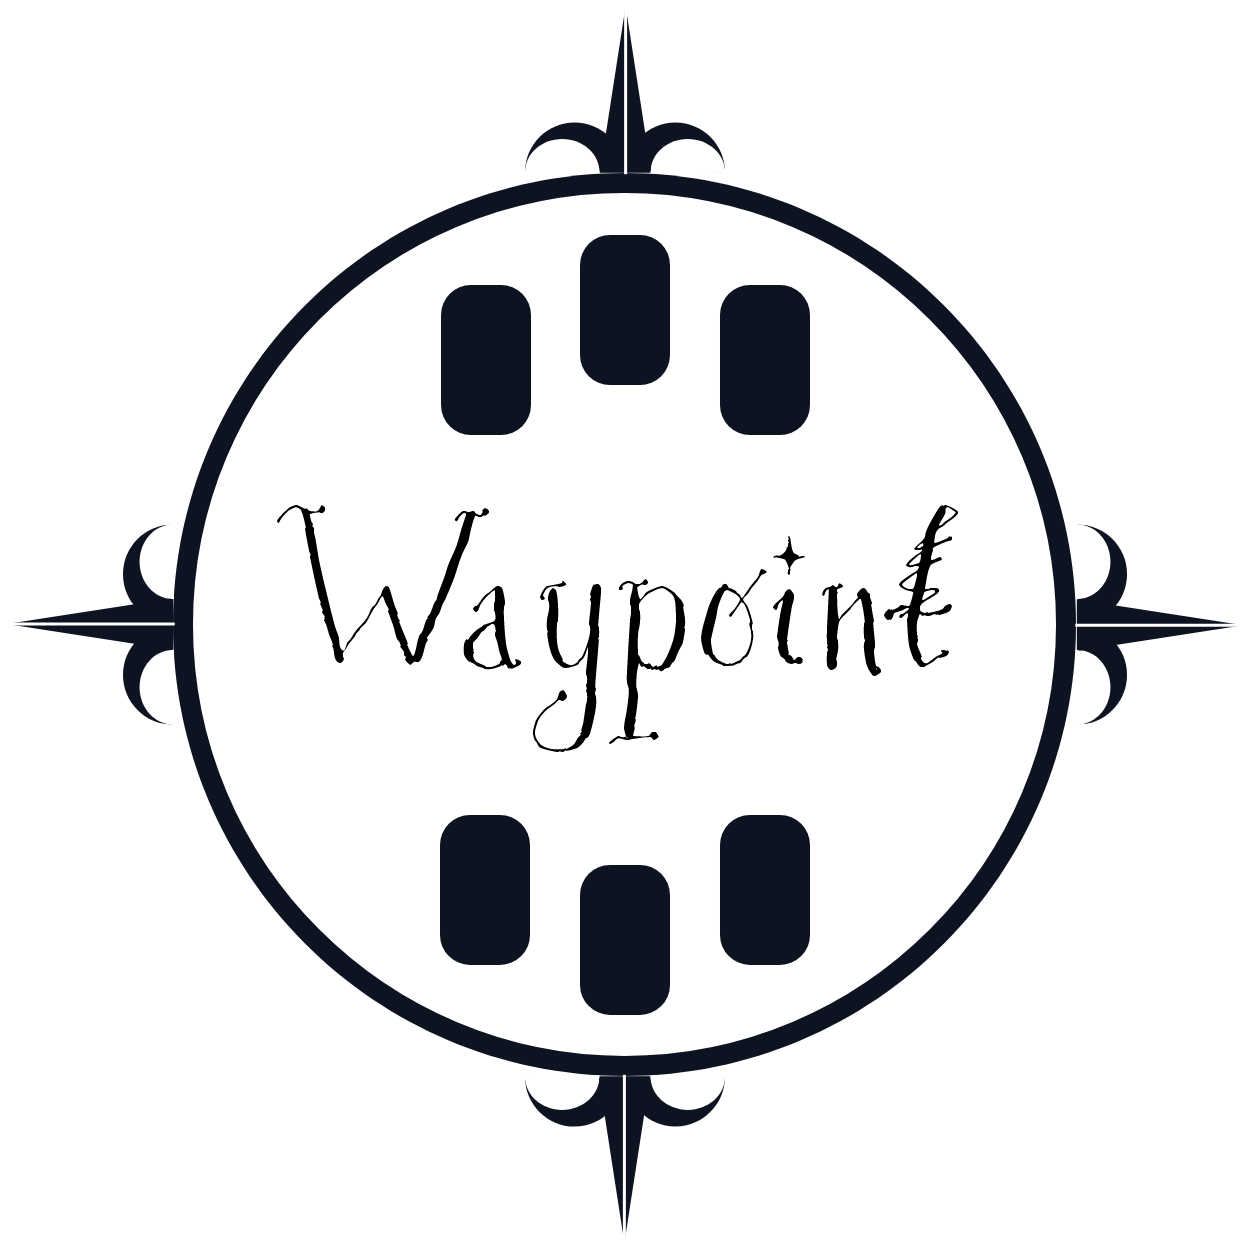 Waypoint on Kickstarter